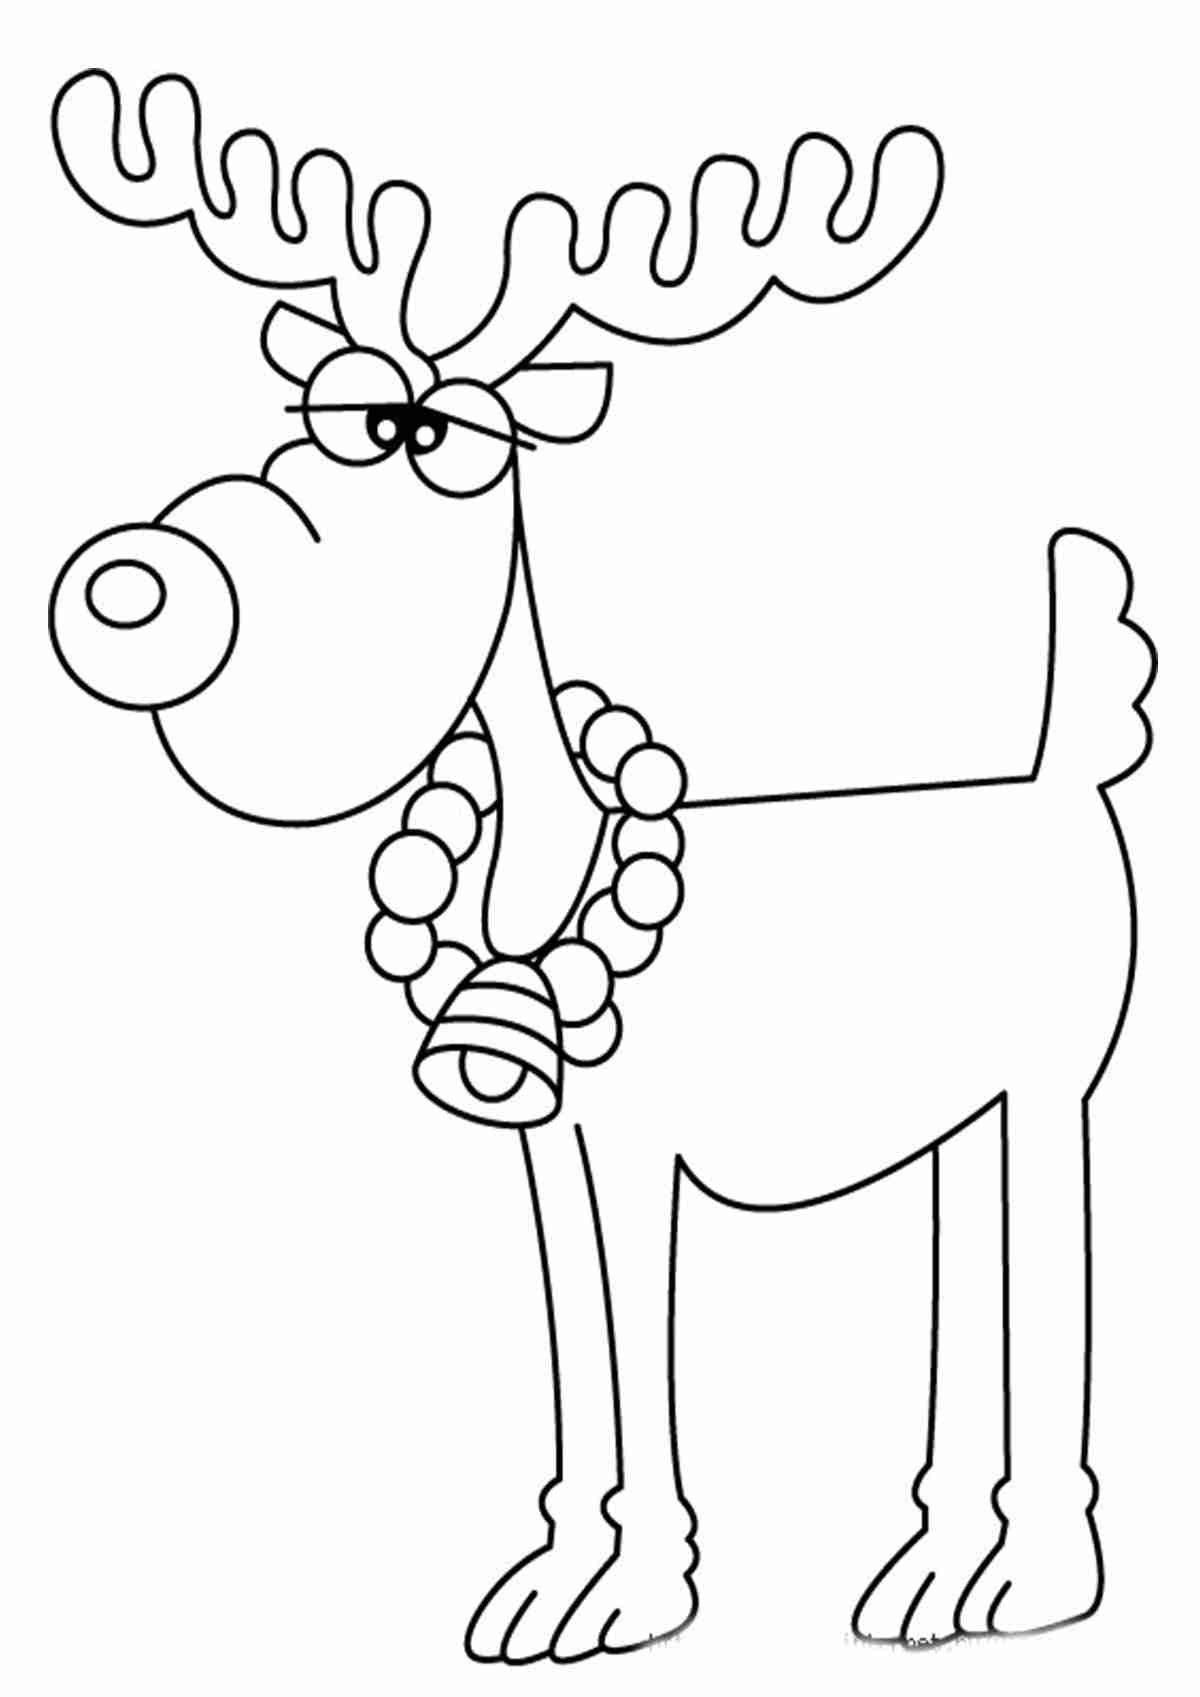 Elegant Christmas deer coloring page